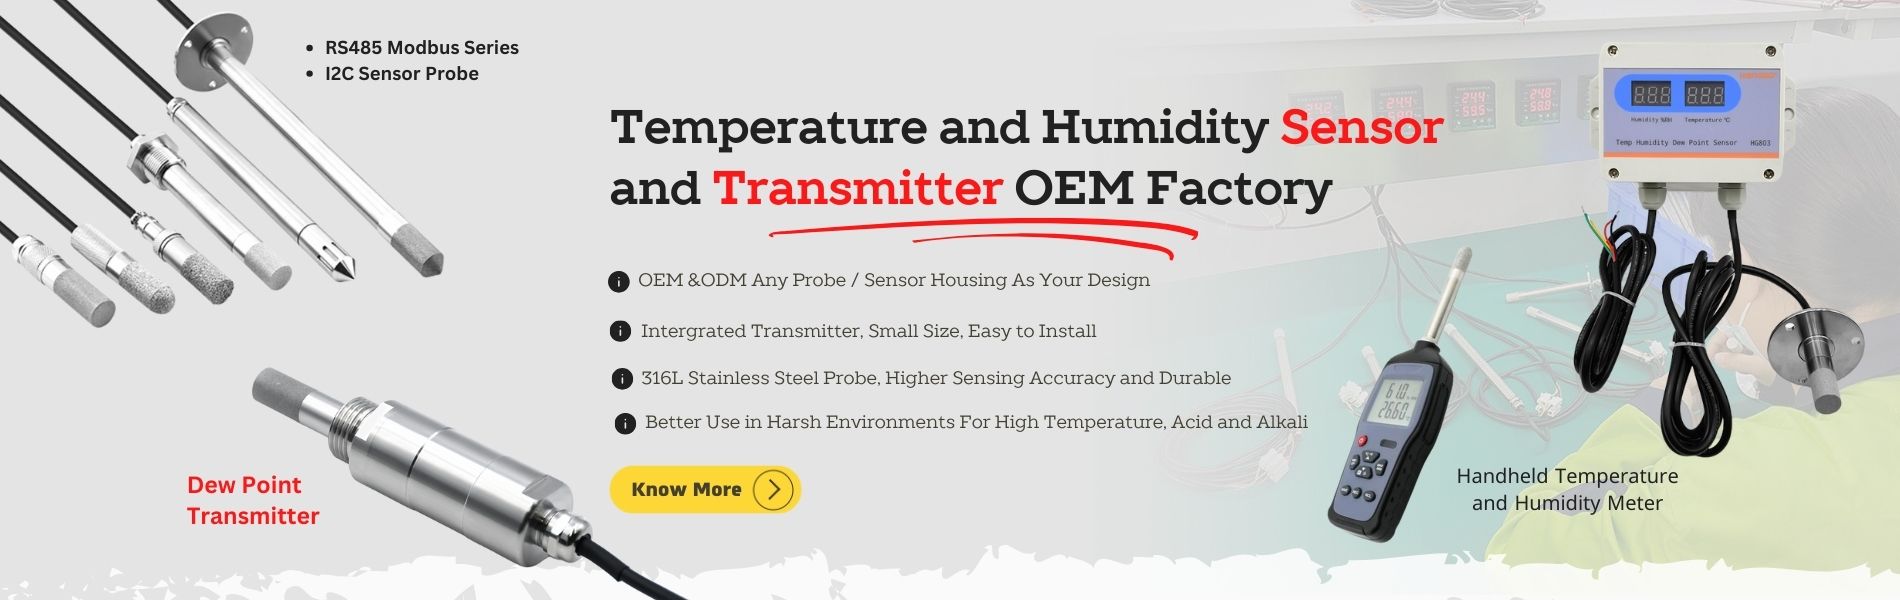 तापमान आर्द्रता सेन्सर प्रोब र ट्रान्समिटर OEM कारखाना